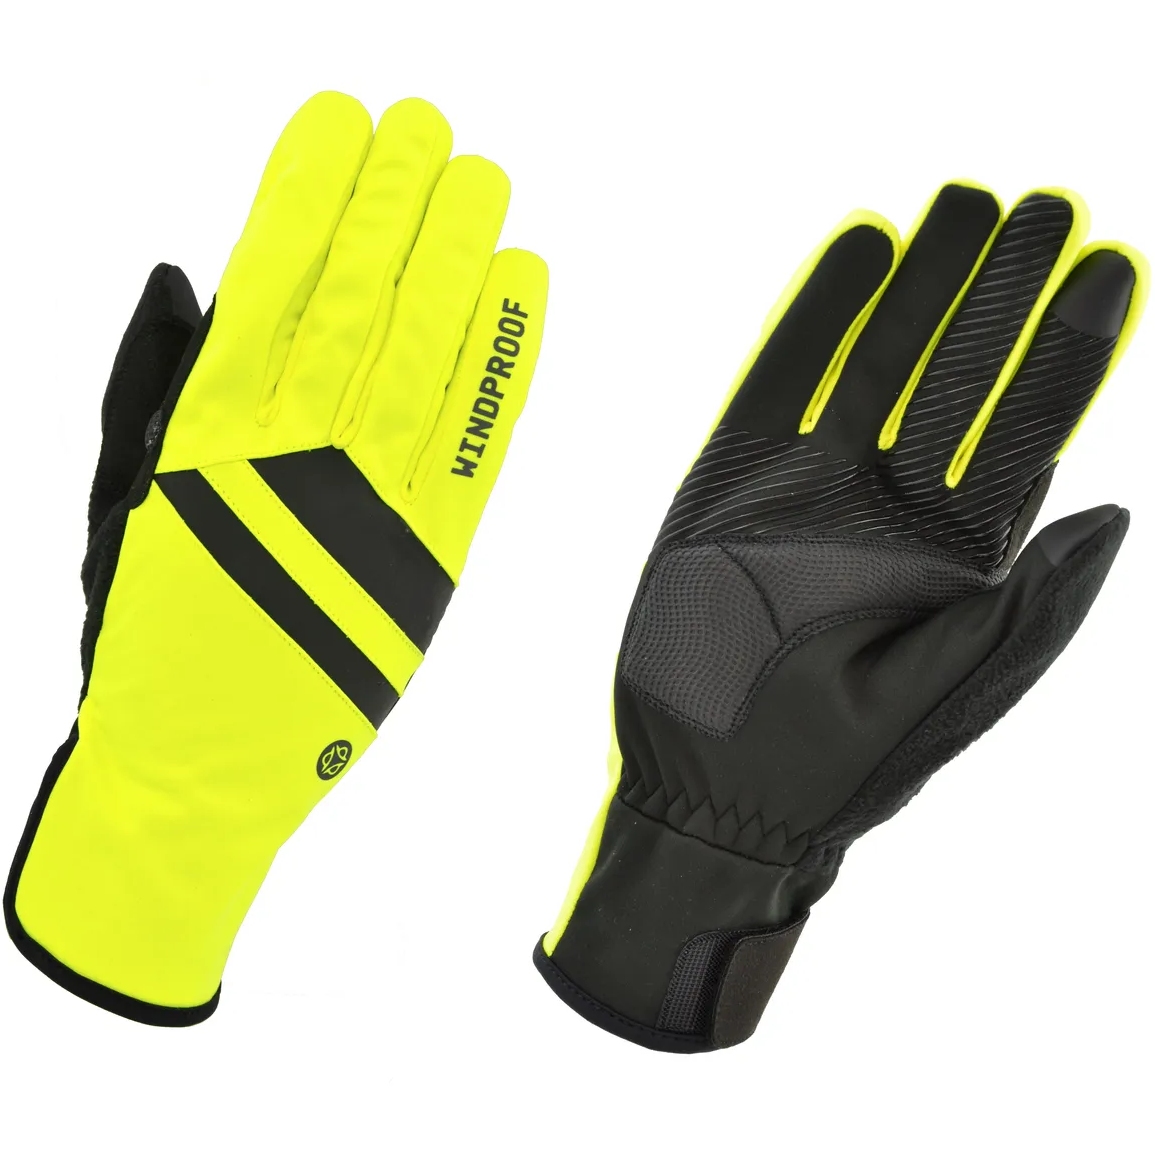 Produktbild von AGU Essential Winddichte Handschuhe - fluo yellow